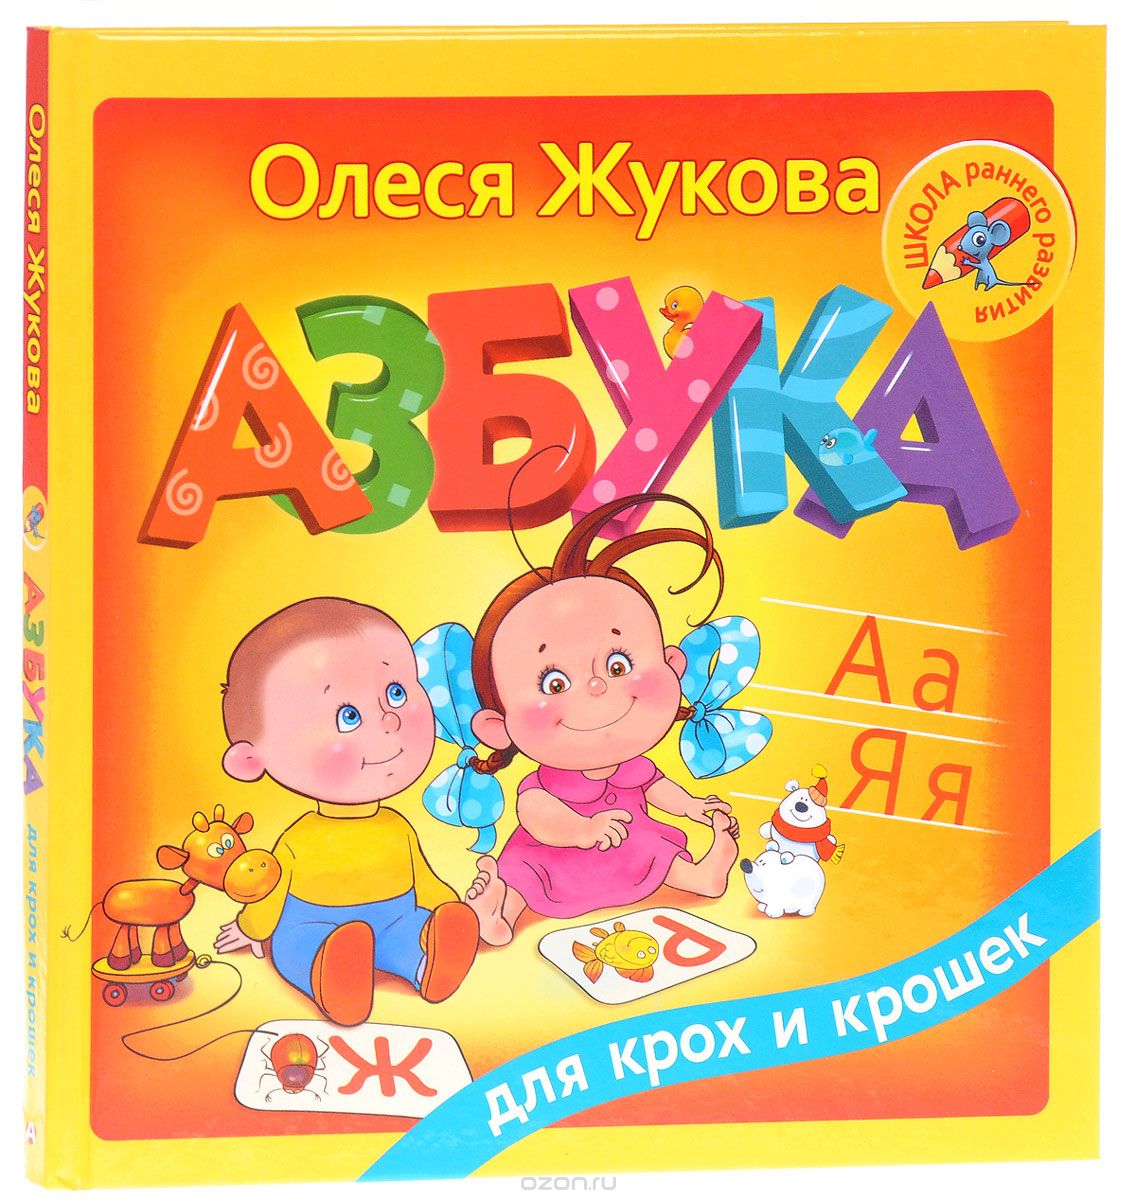 Скачать книгу "Азбука для крох и крошек, Олеся Жукова"